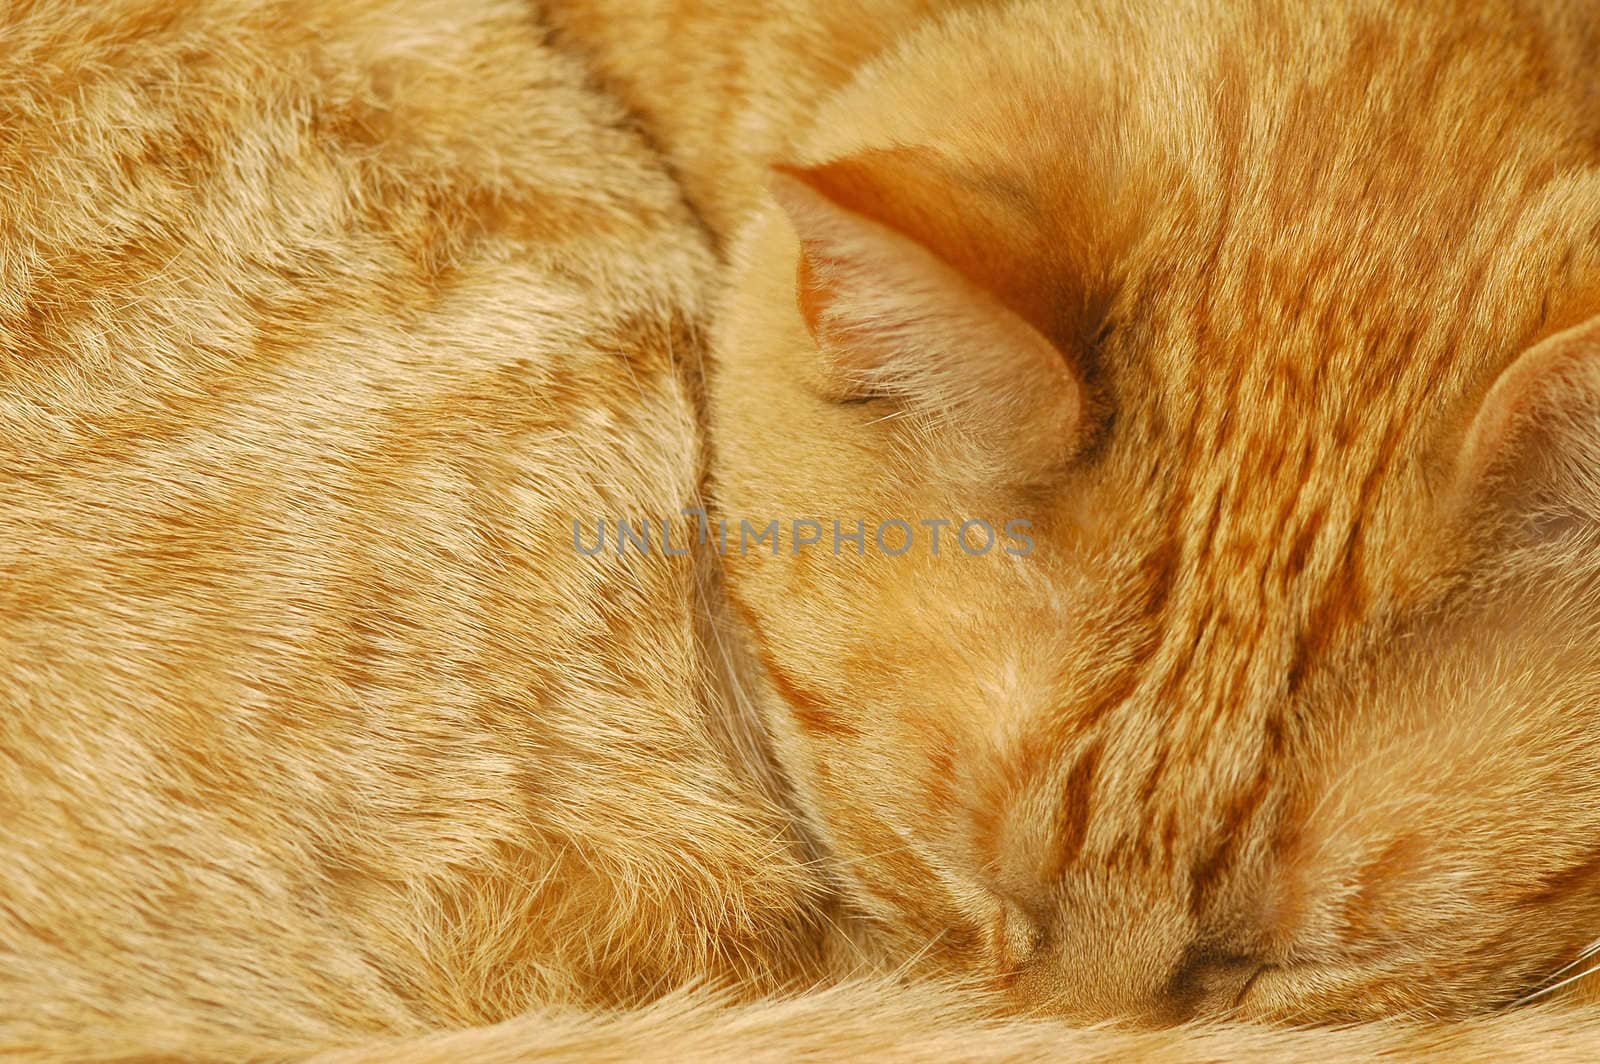 ginger cat by nelsonart